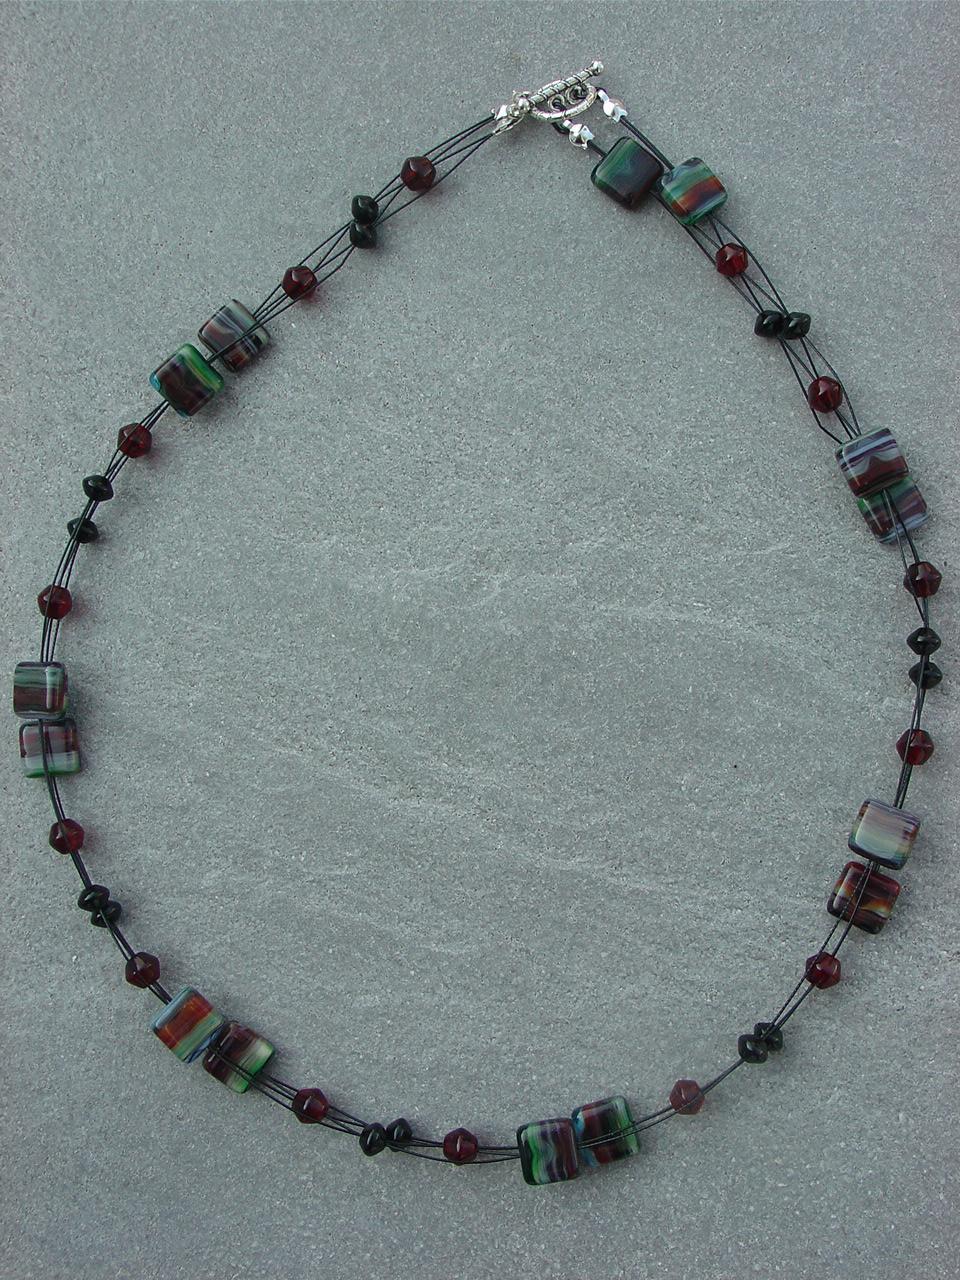 Geissblatt Einzigartige Glasquadrate, gestreift in dunklem Rot, dunklem Grün, hellem Blau, schwarz und weiß, präsentieren sich zusammen